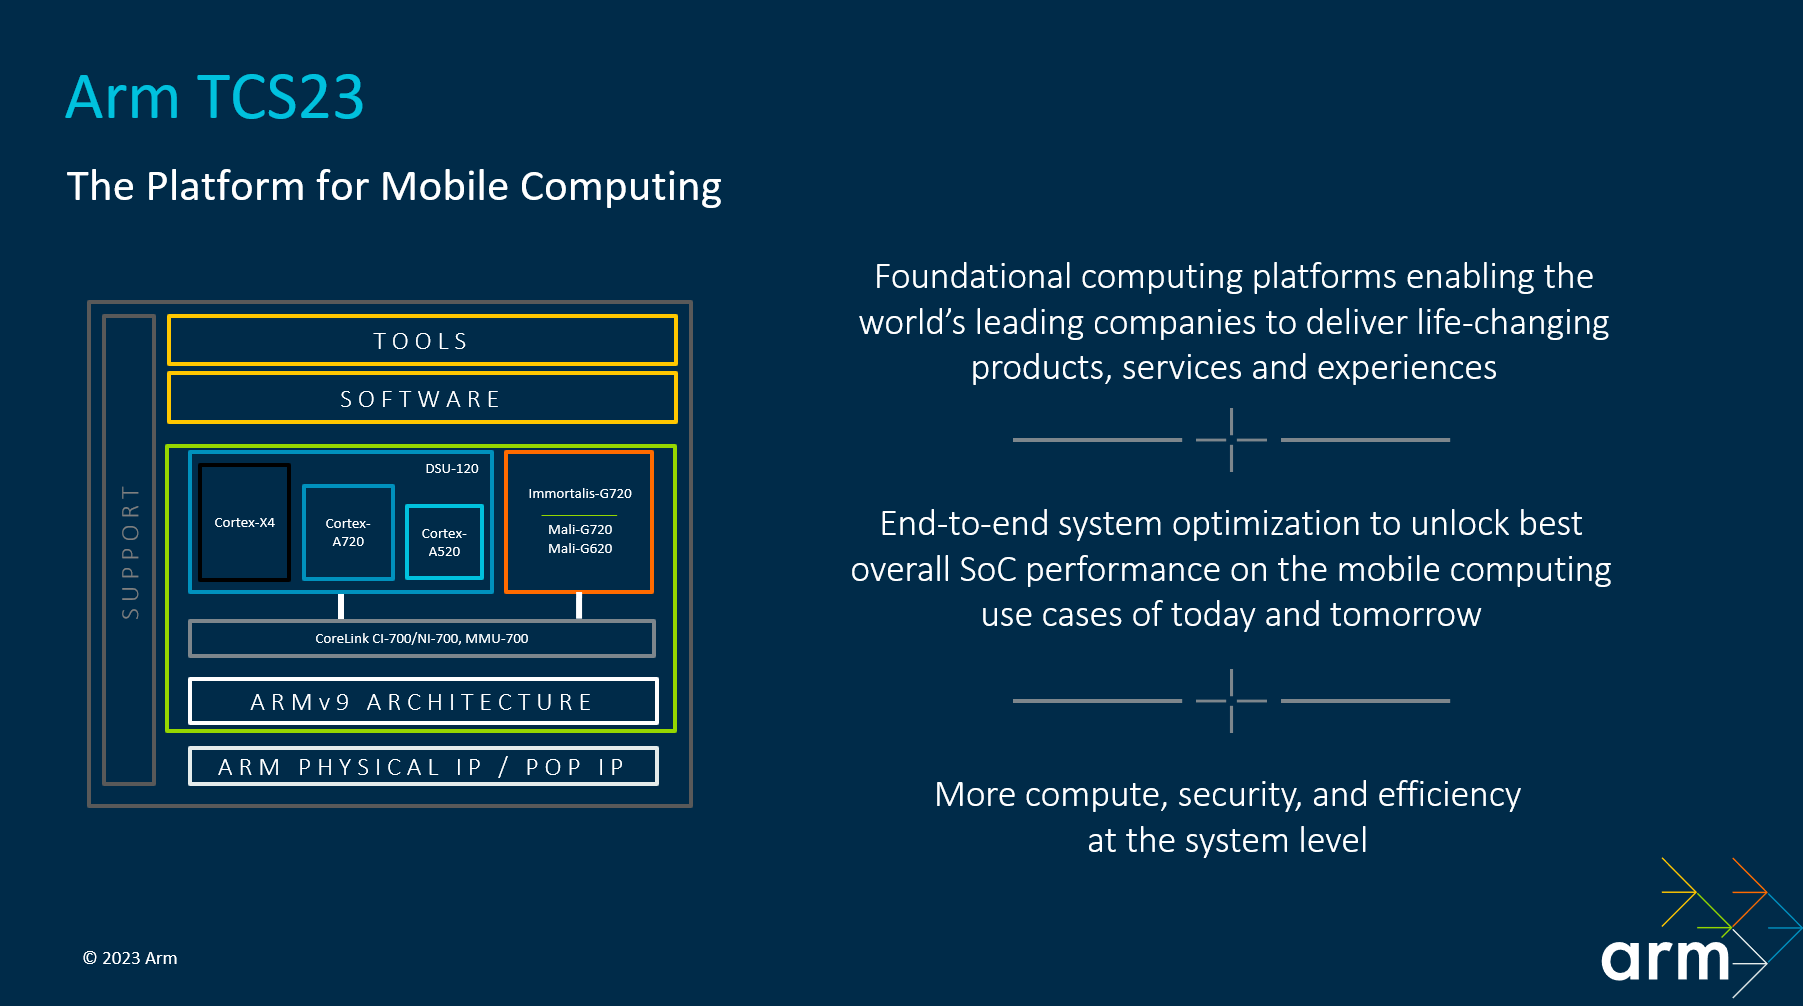 The platform for mobile computing